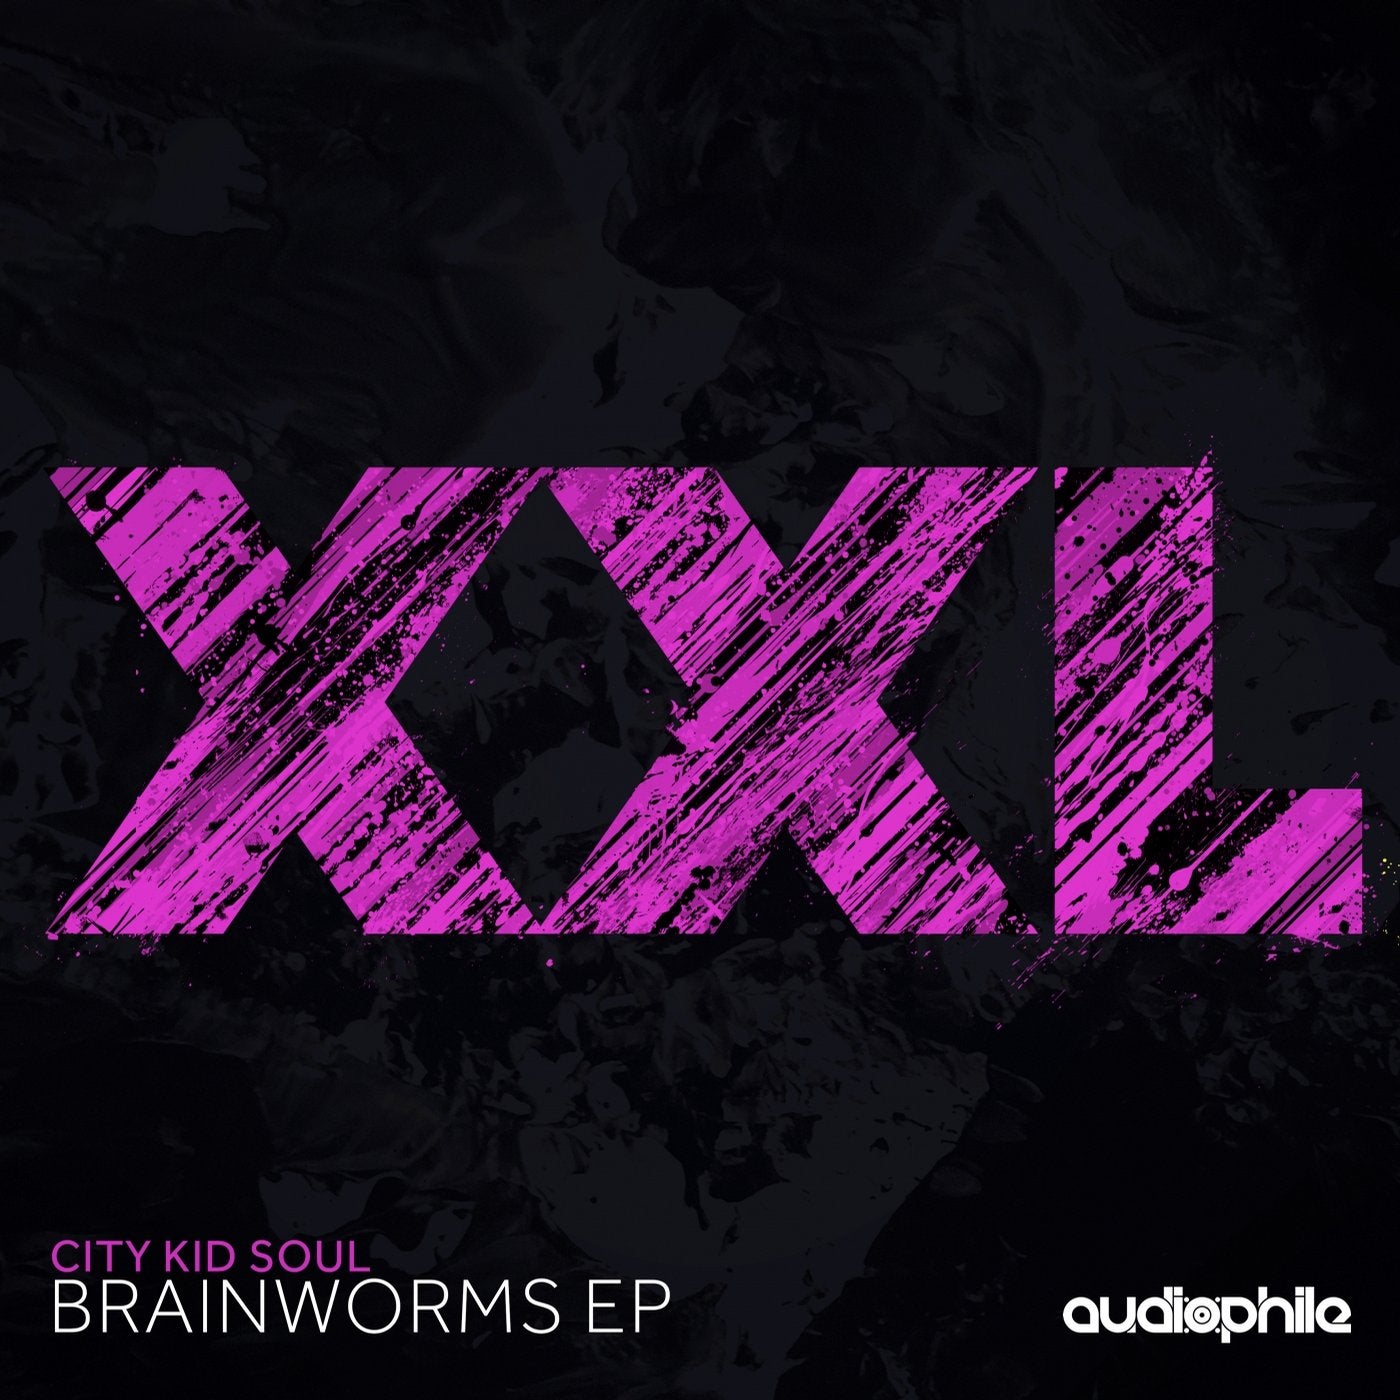 Brainworms EP